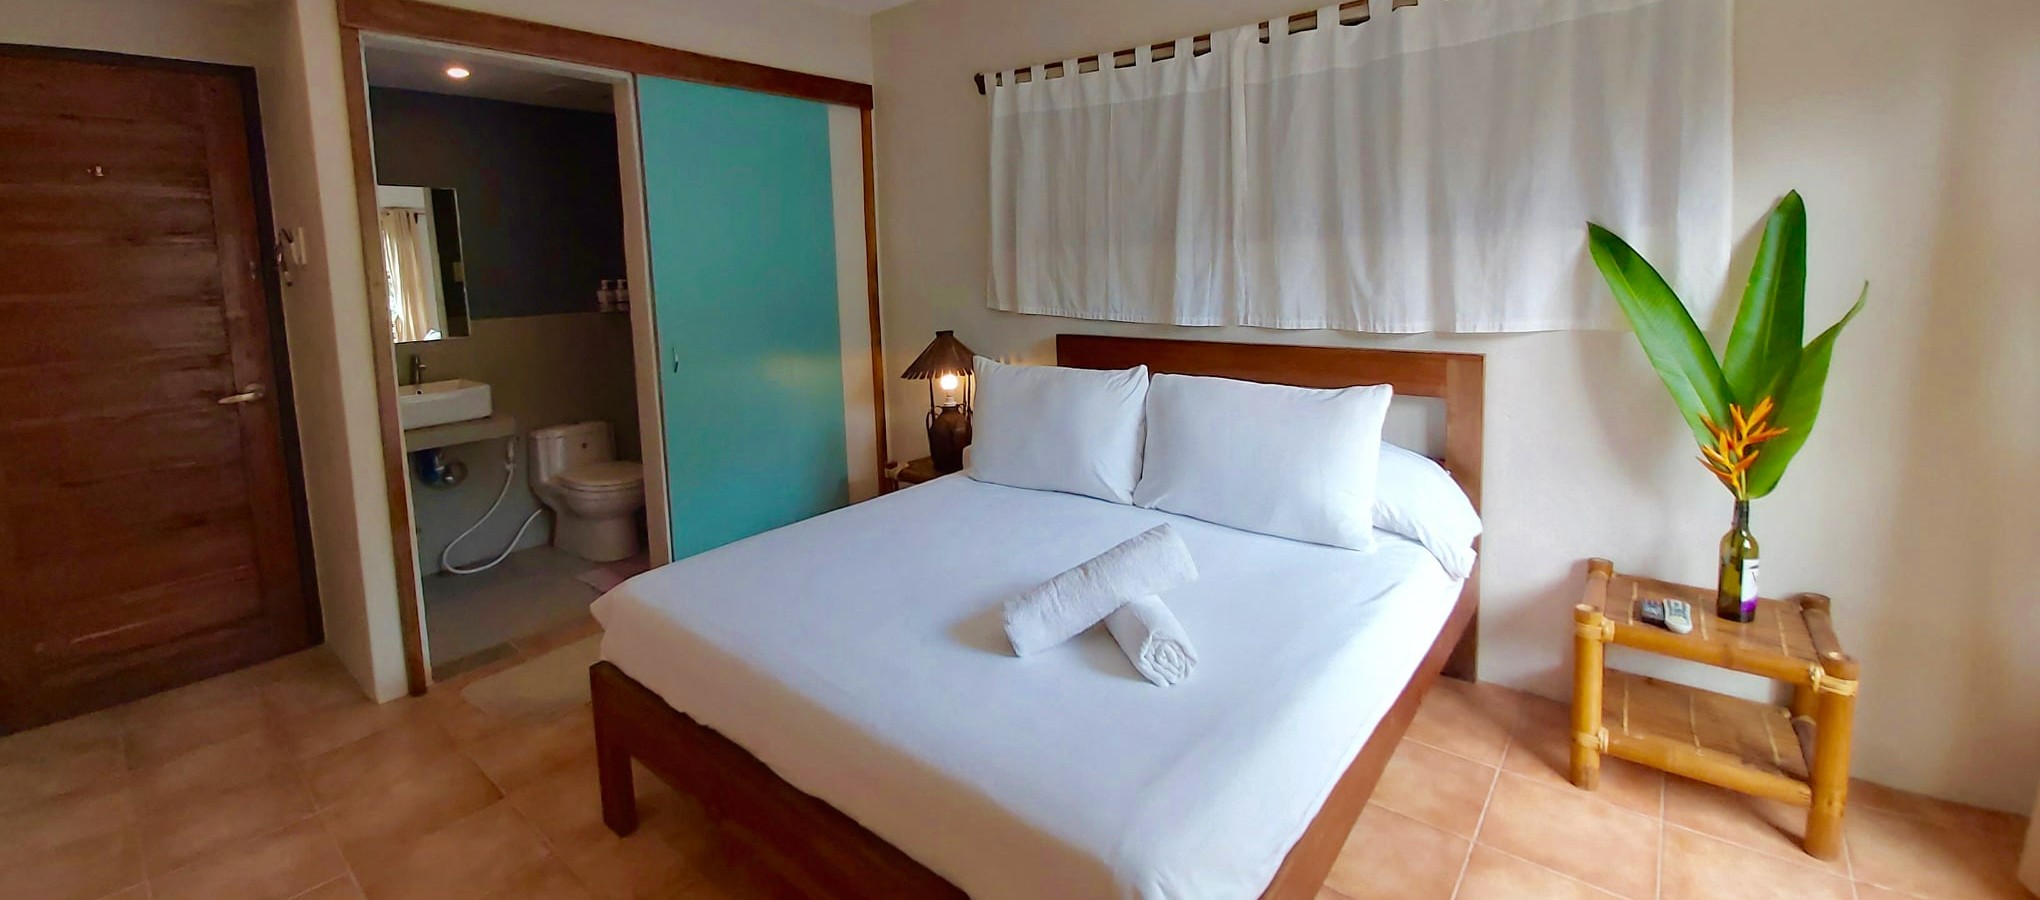 Standard Room at Hannah Hotel Boracay